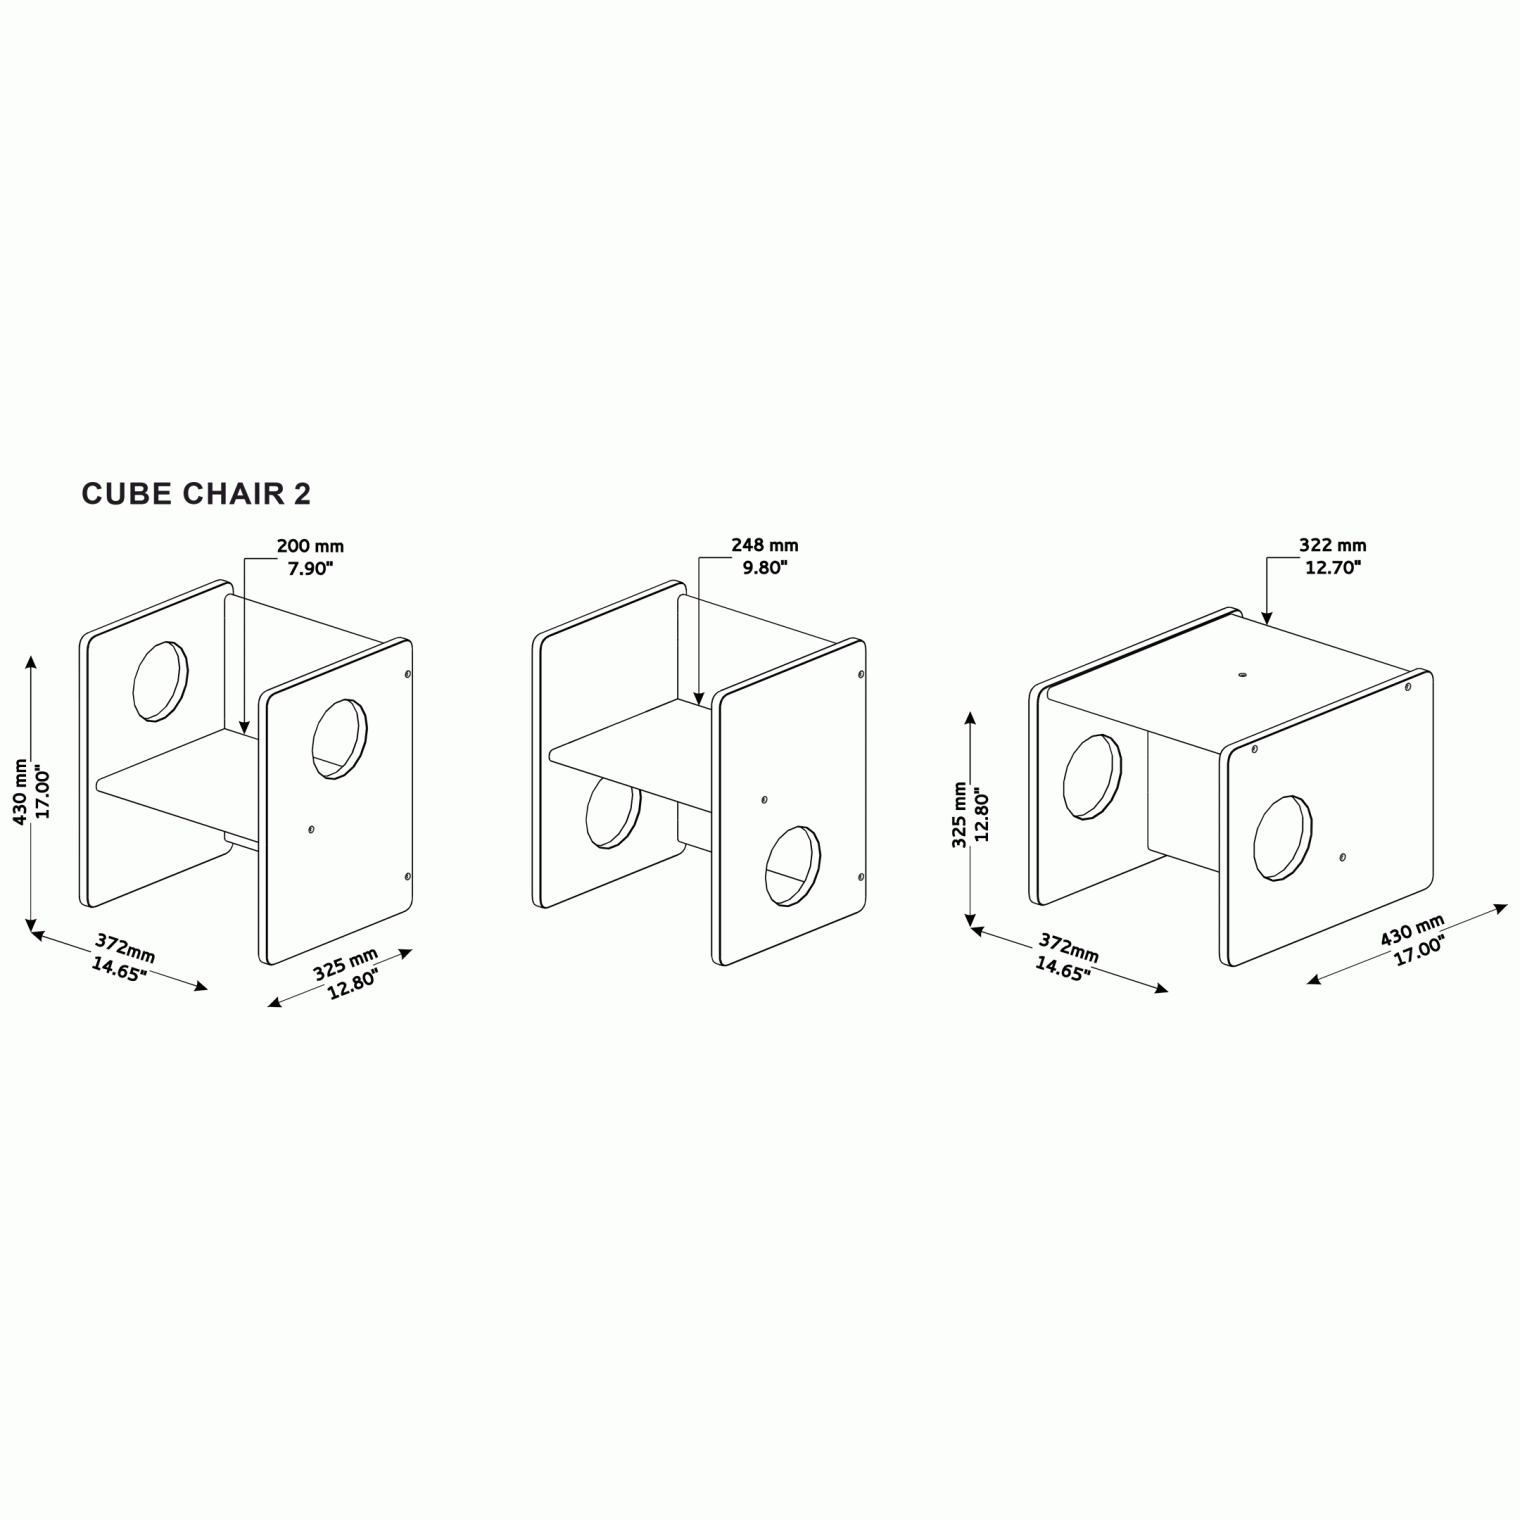 Montessori cube chair dimensions